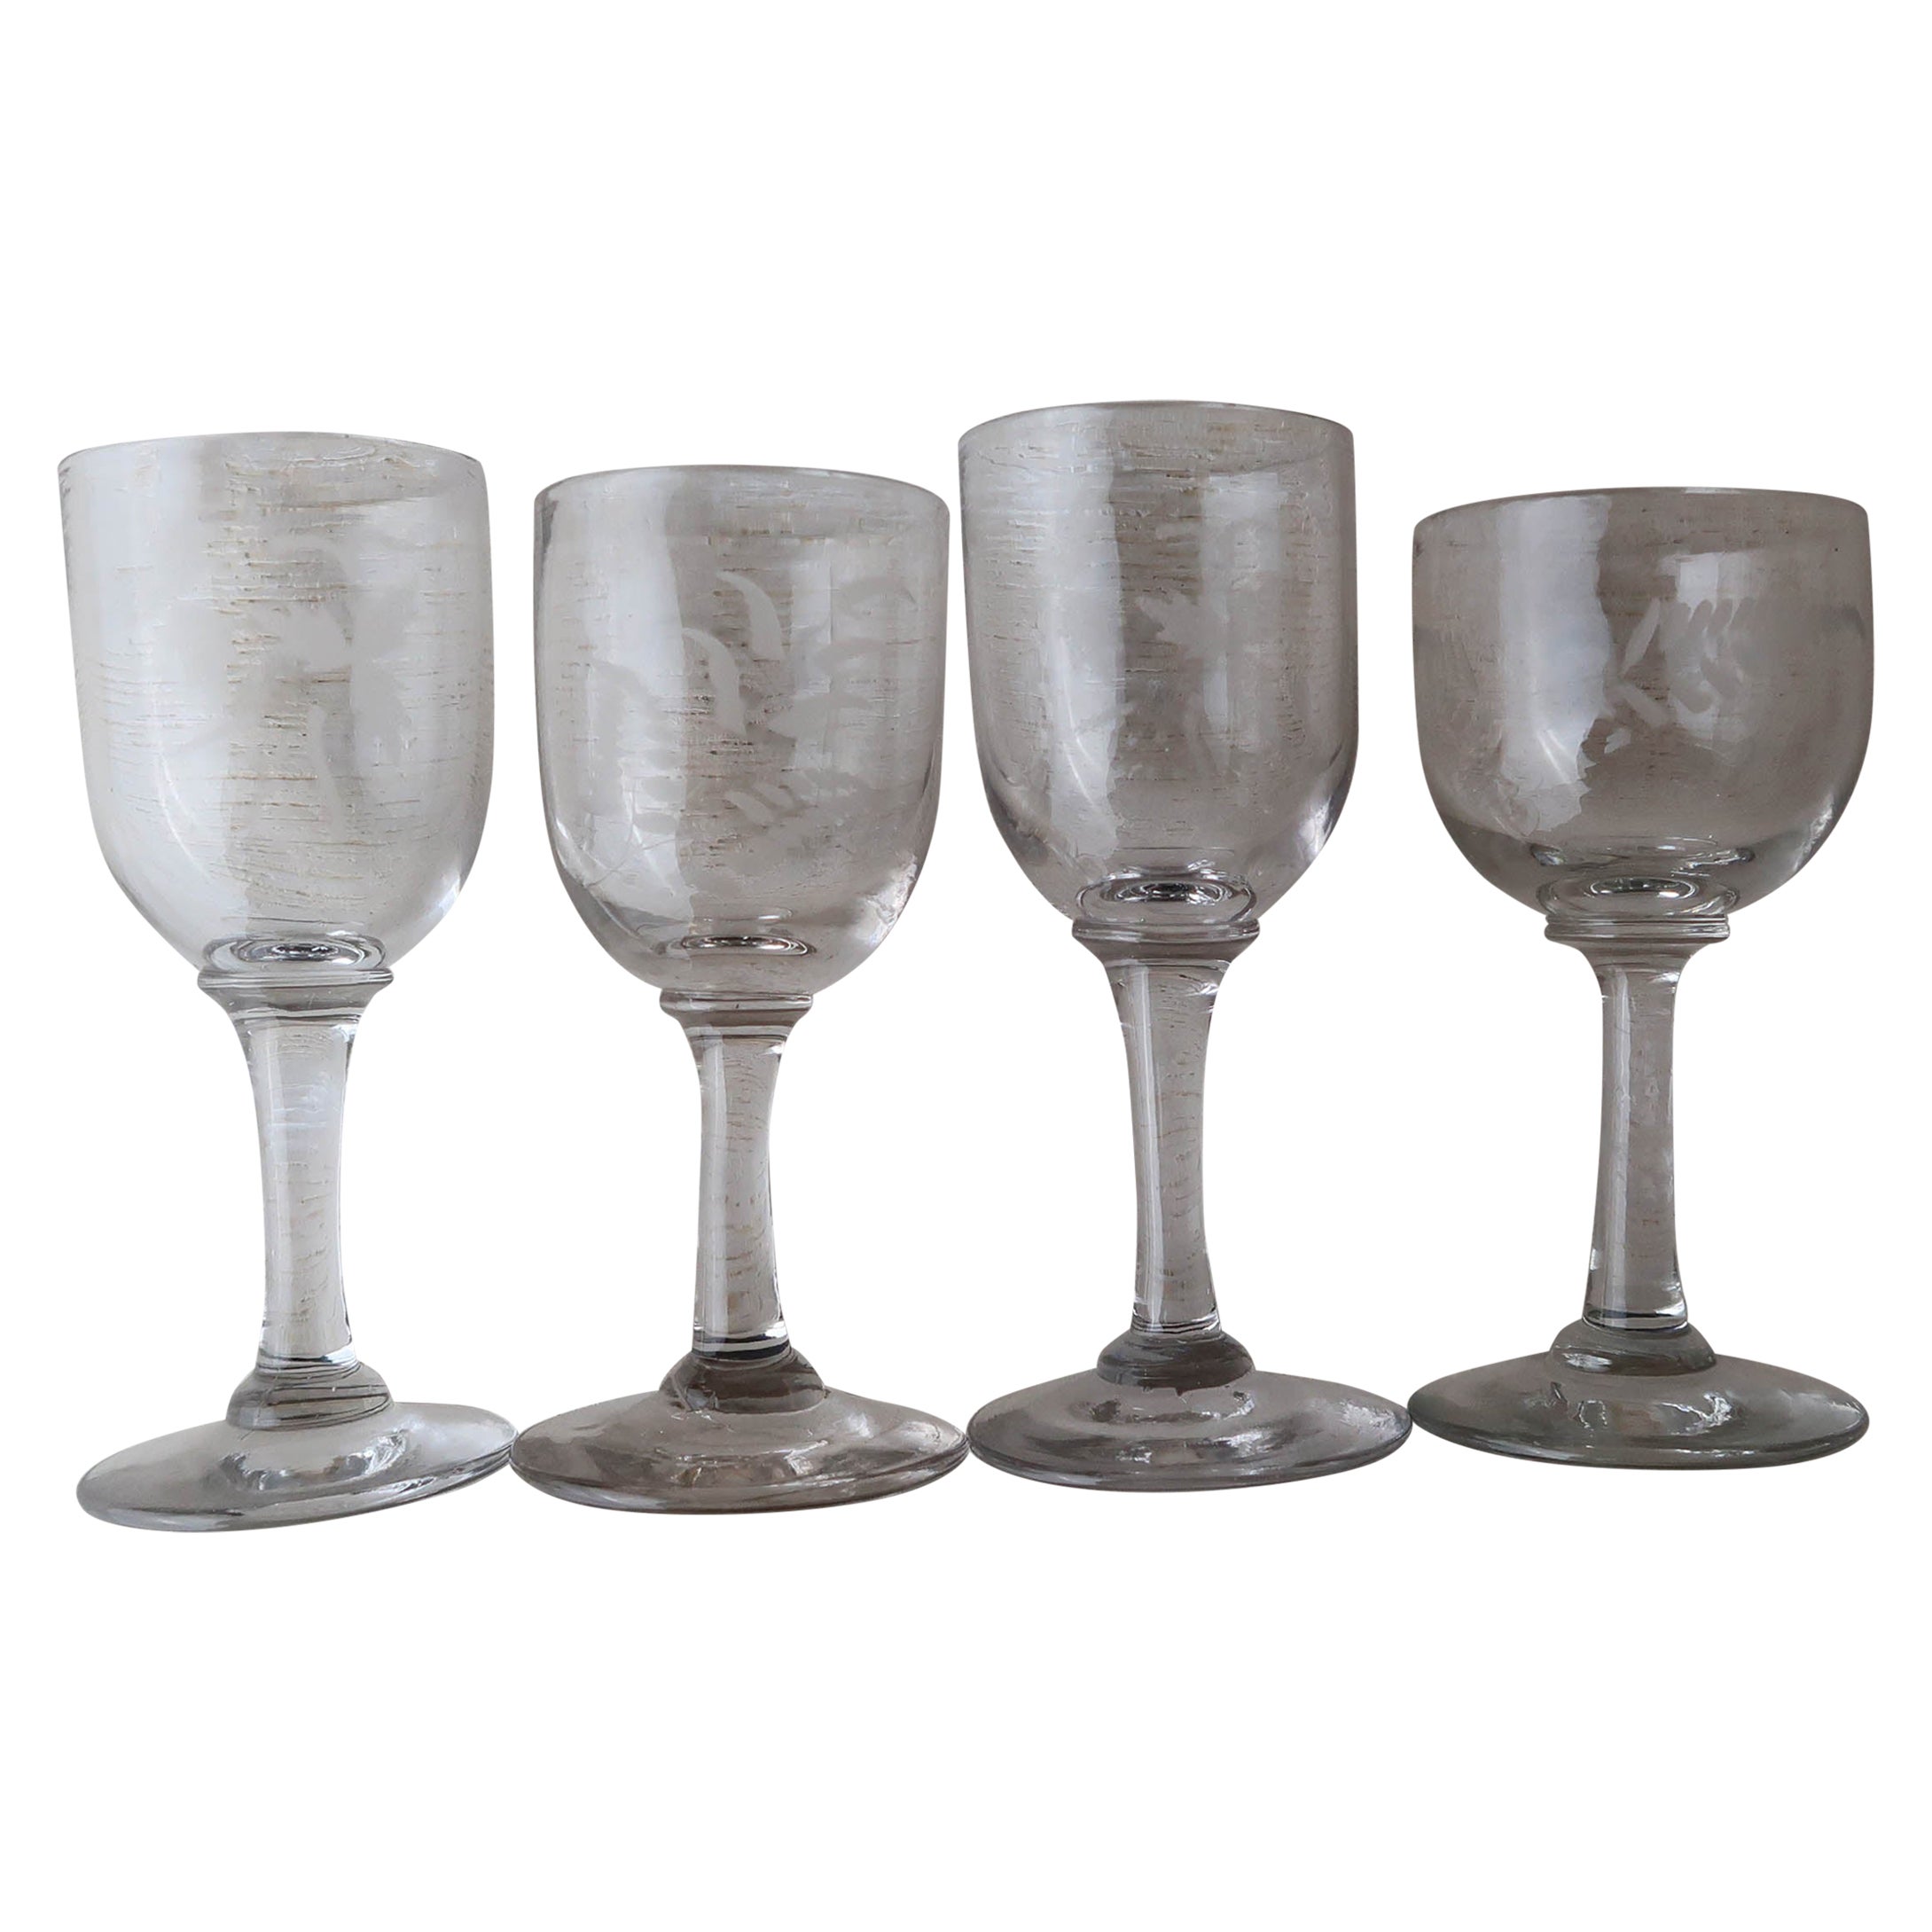 Collection de 4 petits verres anglais du 19e siècle gravés à l'eau-forte